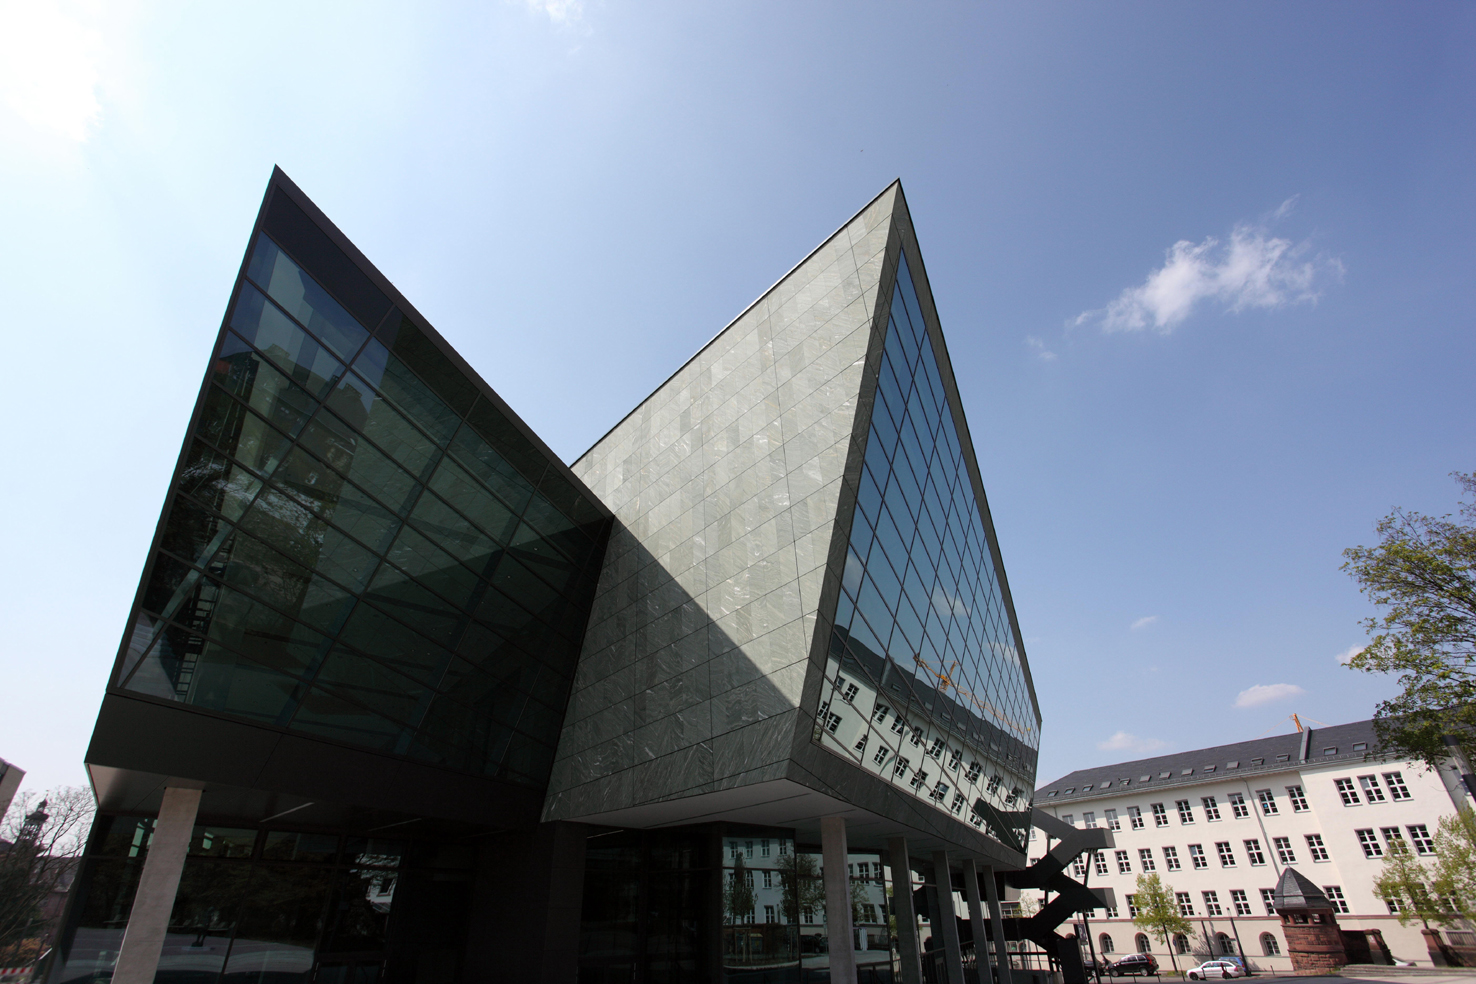 Darmstadtium - 2007 eröffnet als Wissenschafts- und Kongresszentrum von Darmstadt.
